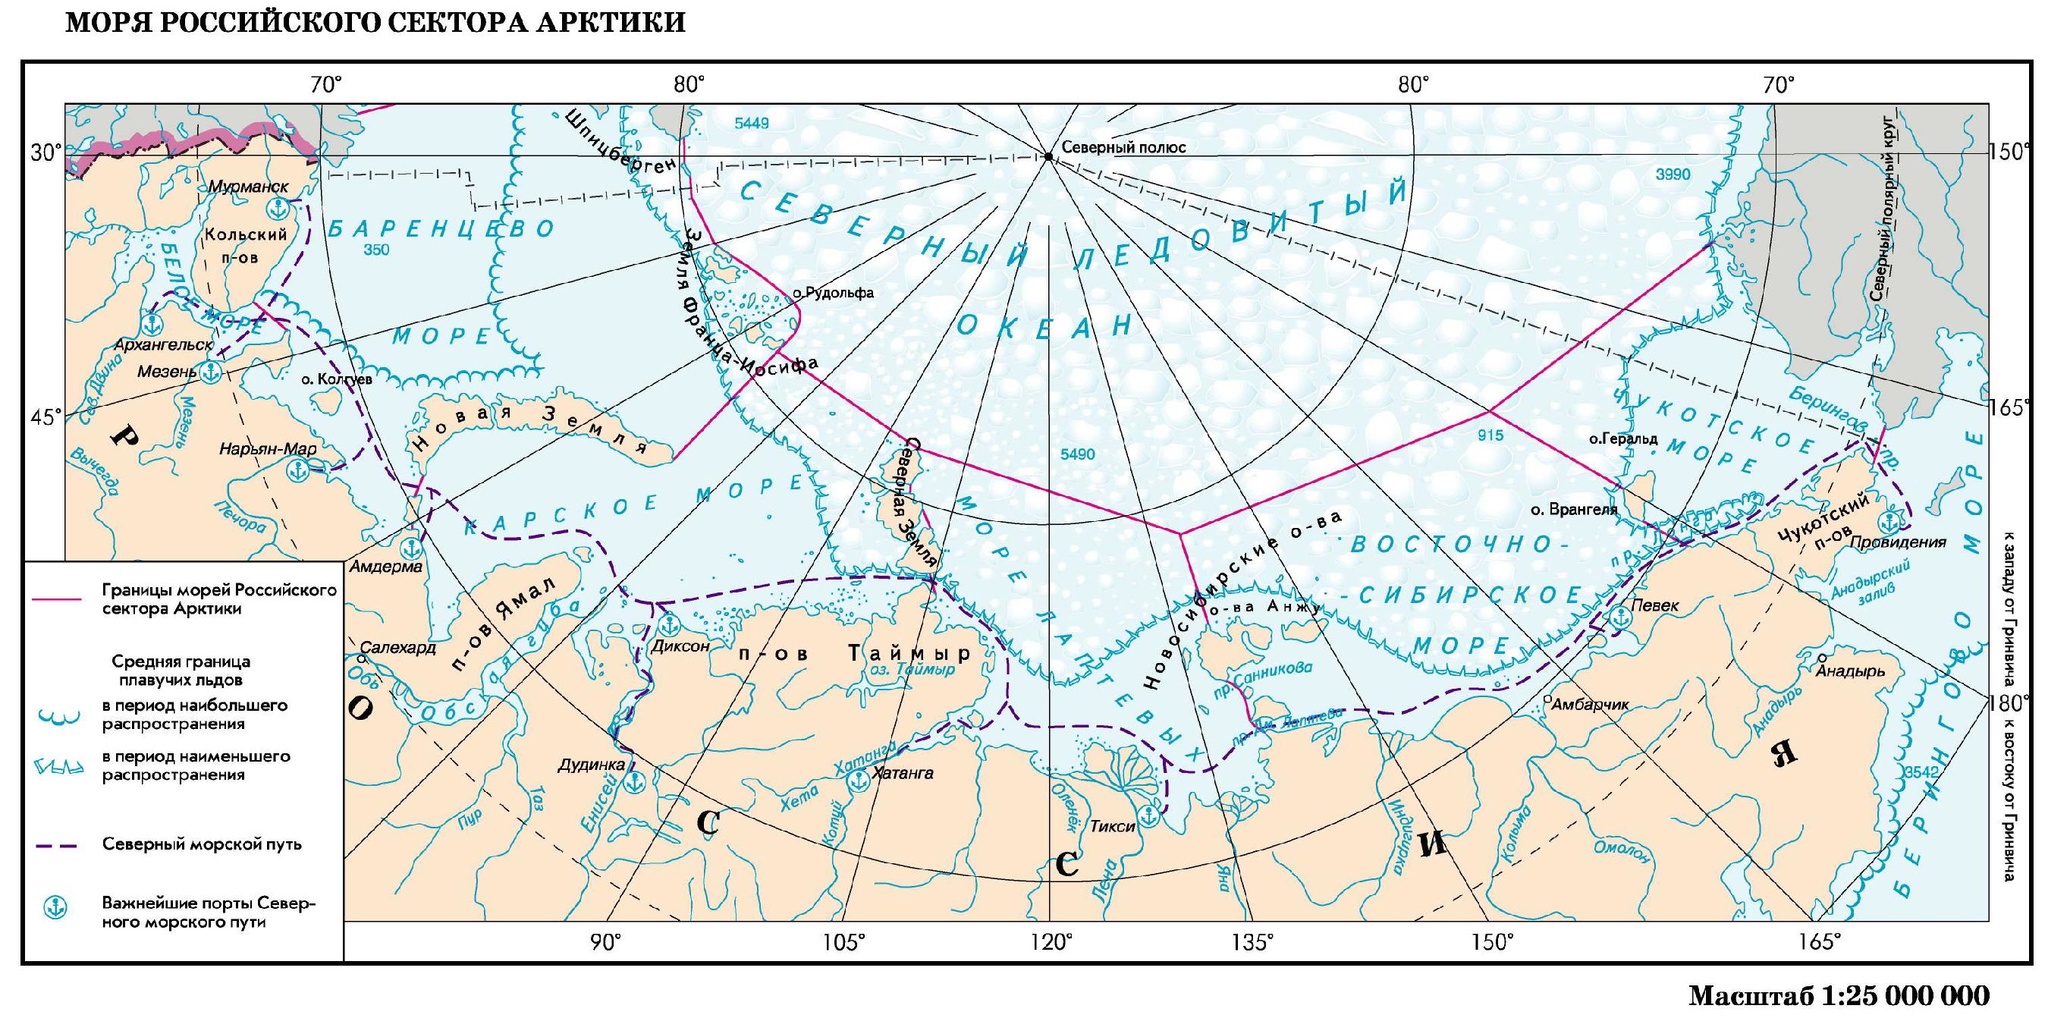 Северный морской путь на карте границы РФ. Арктика Северный морской путь на карте. Граница российского сектора Арктики. Морская граница России в Северном Ледовитом океане на карте. Направление северного морского